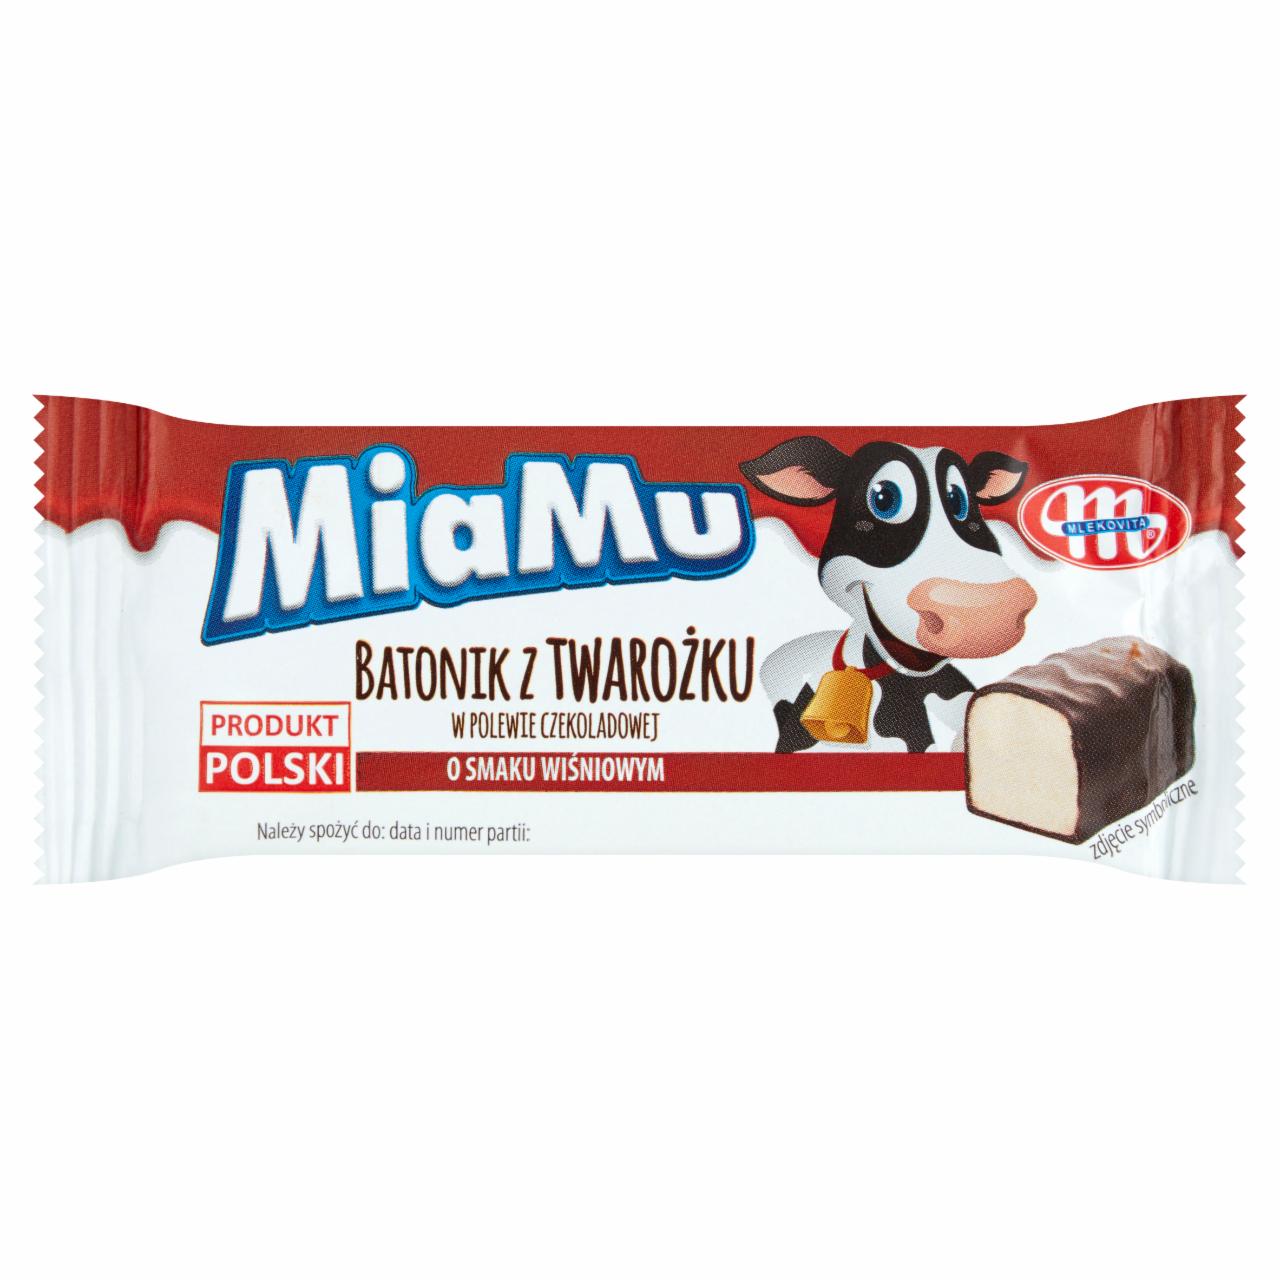 Zdjęcia - Mlekovita MiaMu Batonik z twarożku w polewie czekoladowej o smaku wiśniowym 40 g